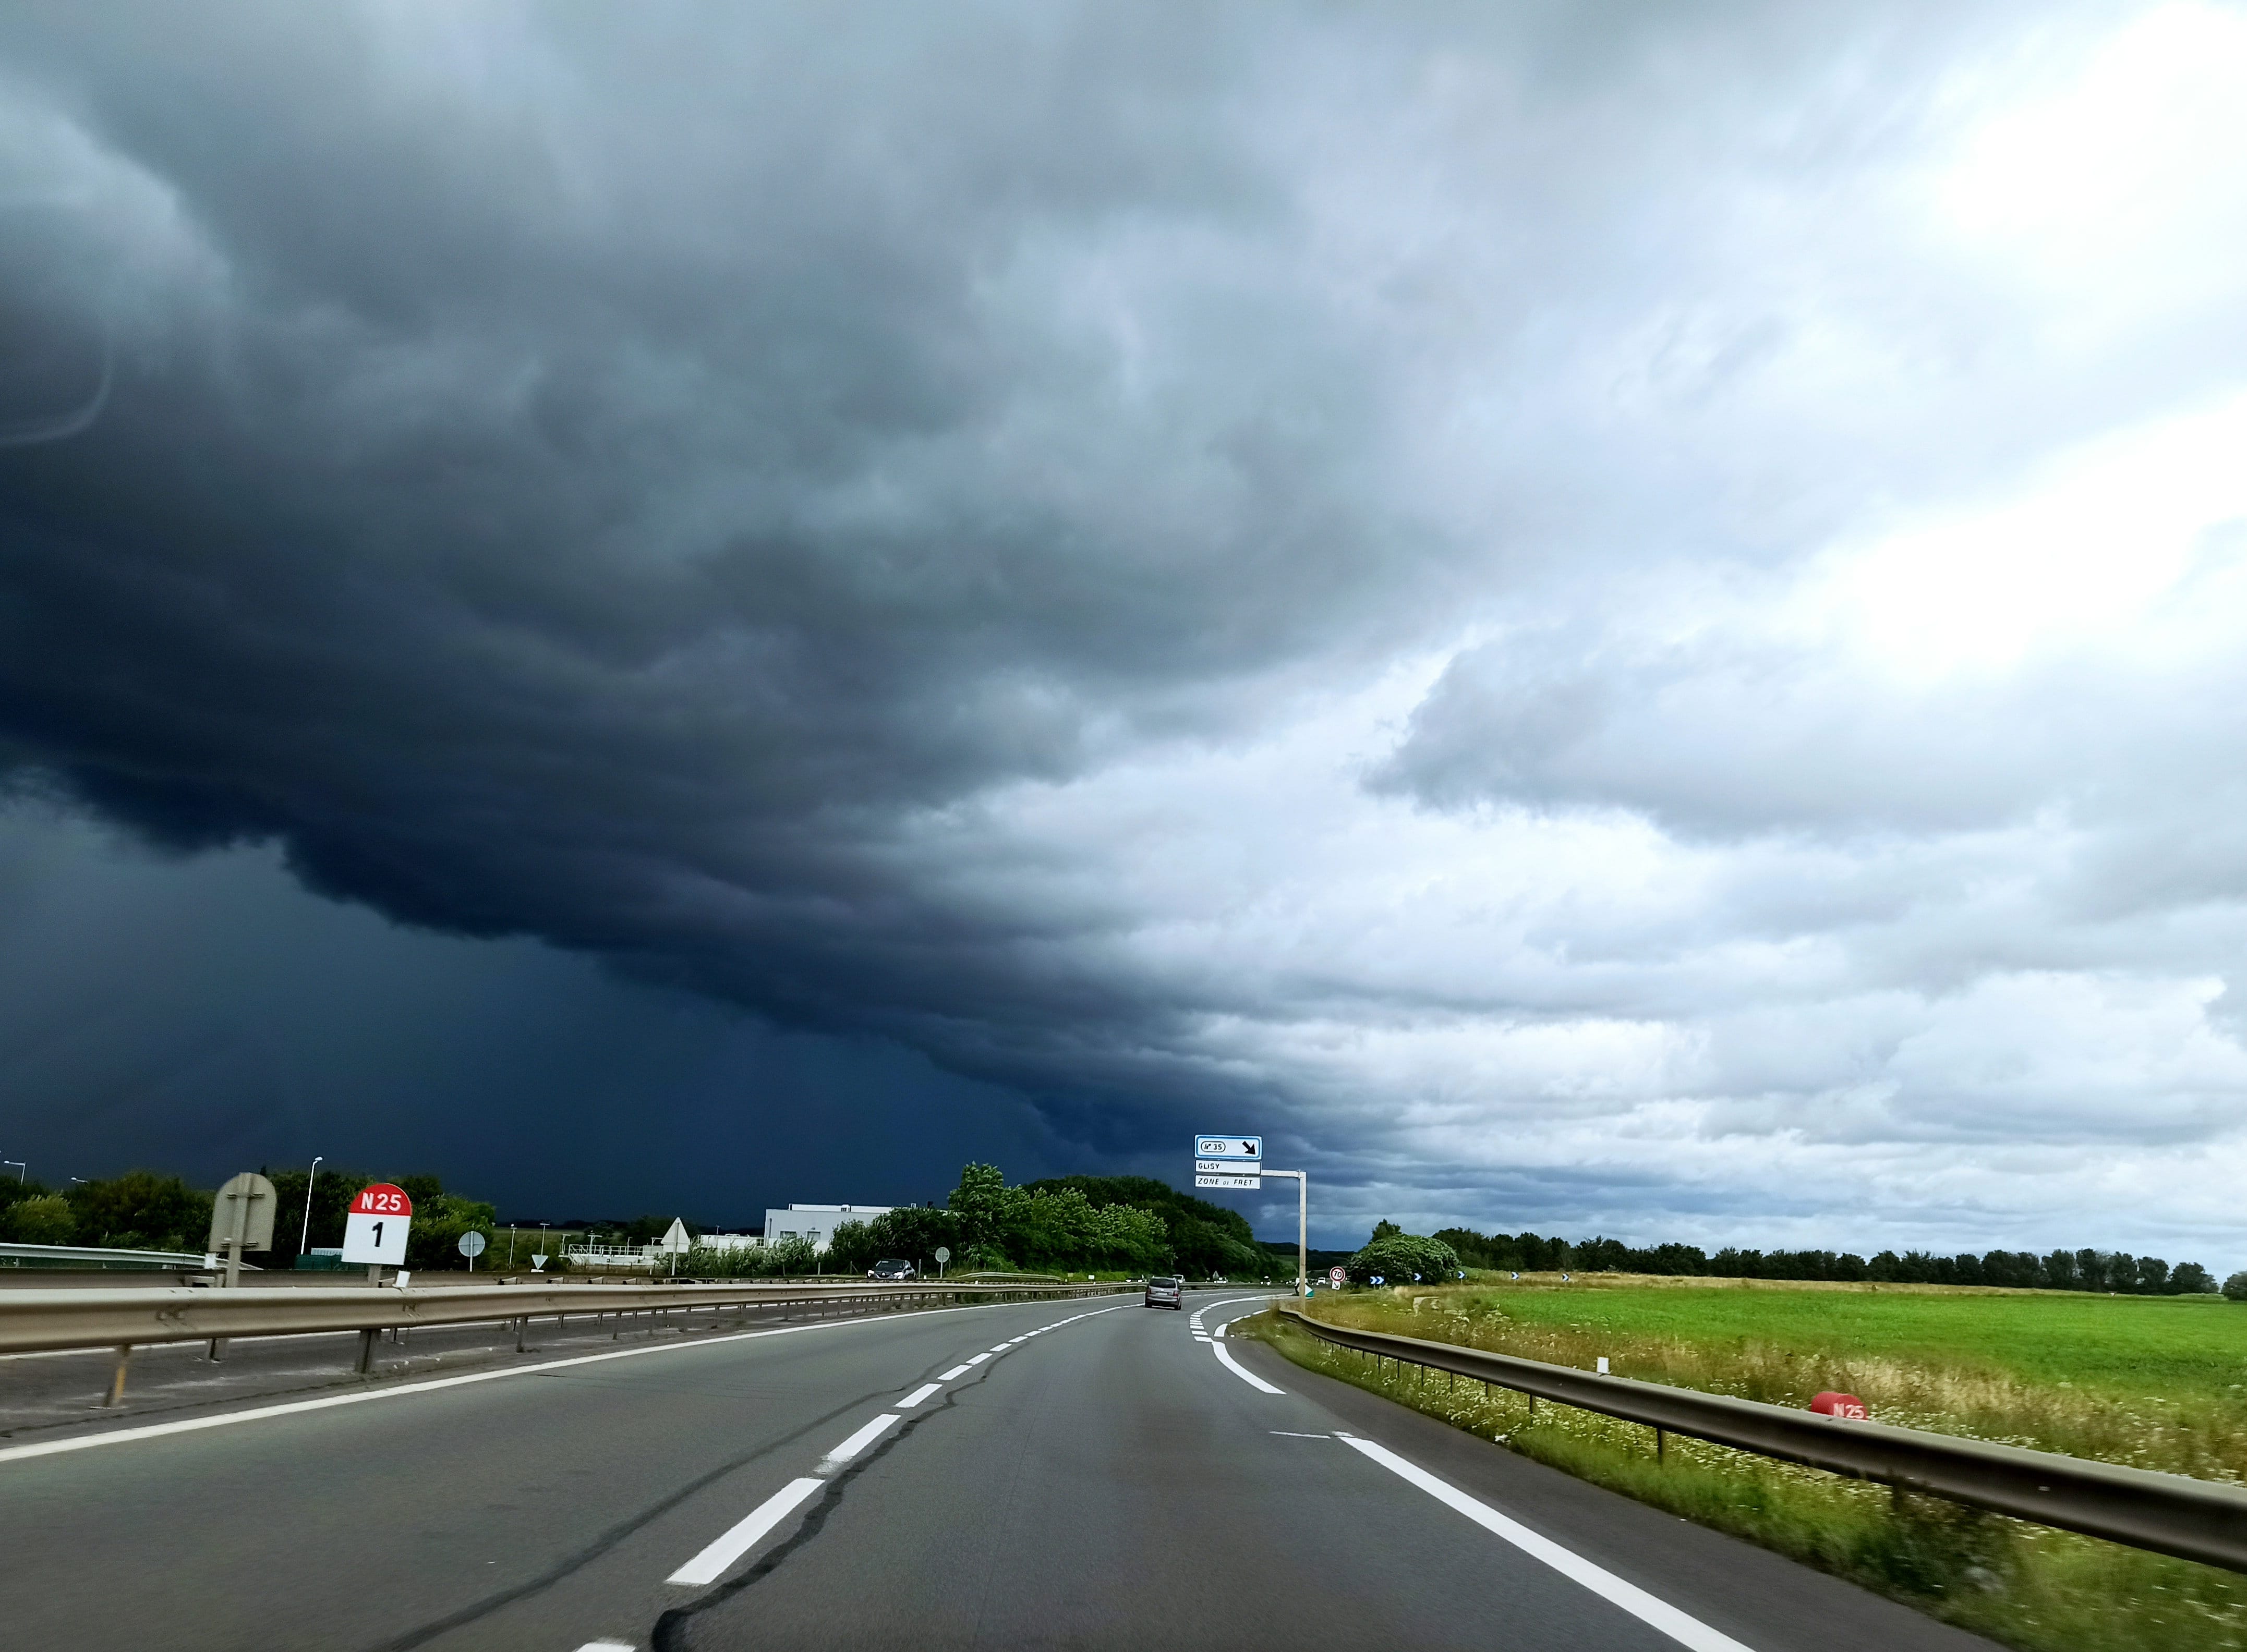 Rocade nord d'Amiens, une barrière de nuages noirs arrive sur la ville... bientôt le déchaînement dans une obscurité dense et électrique ! - 07/08/2021 14:50 - Simon Le Neindre